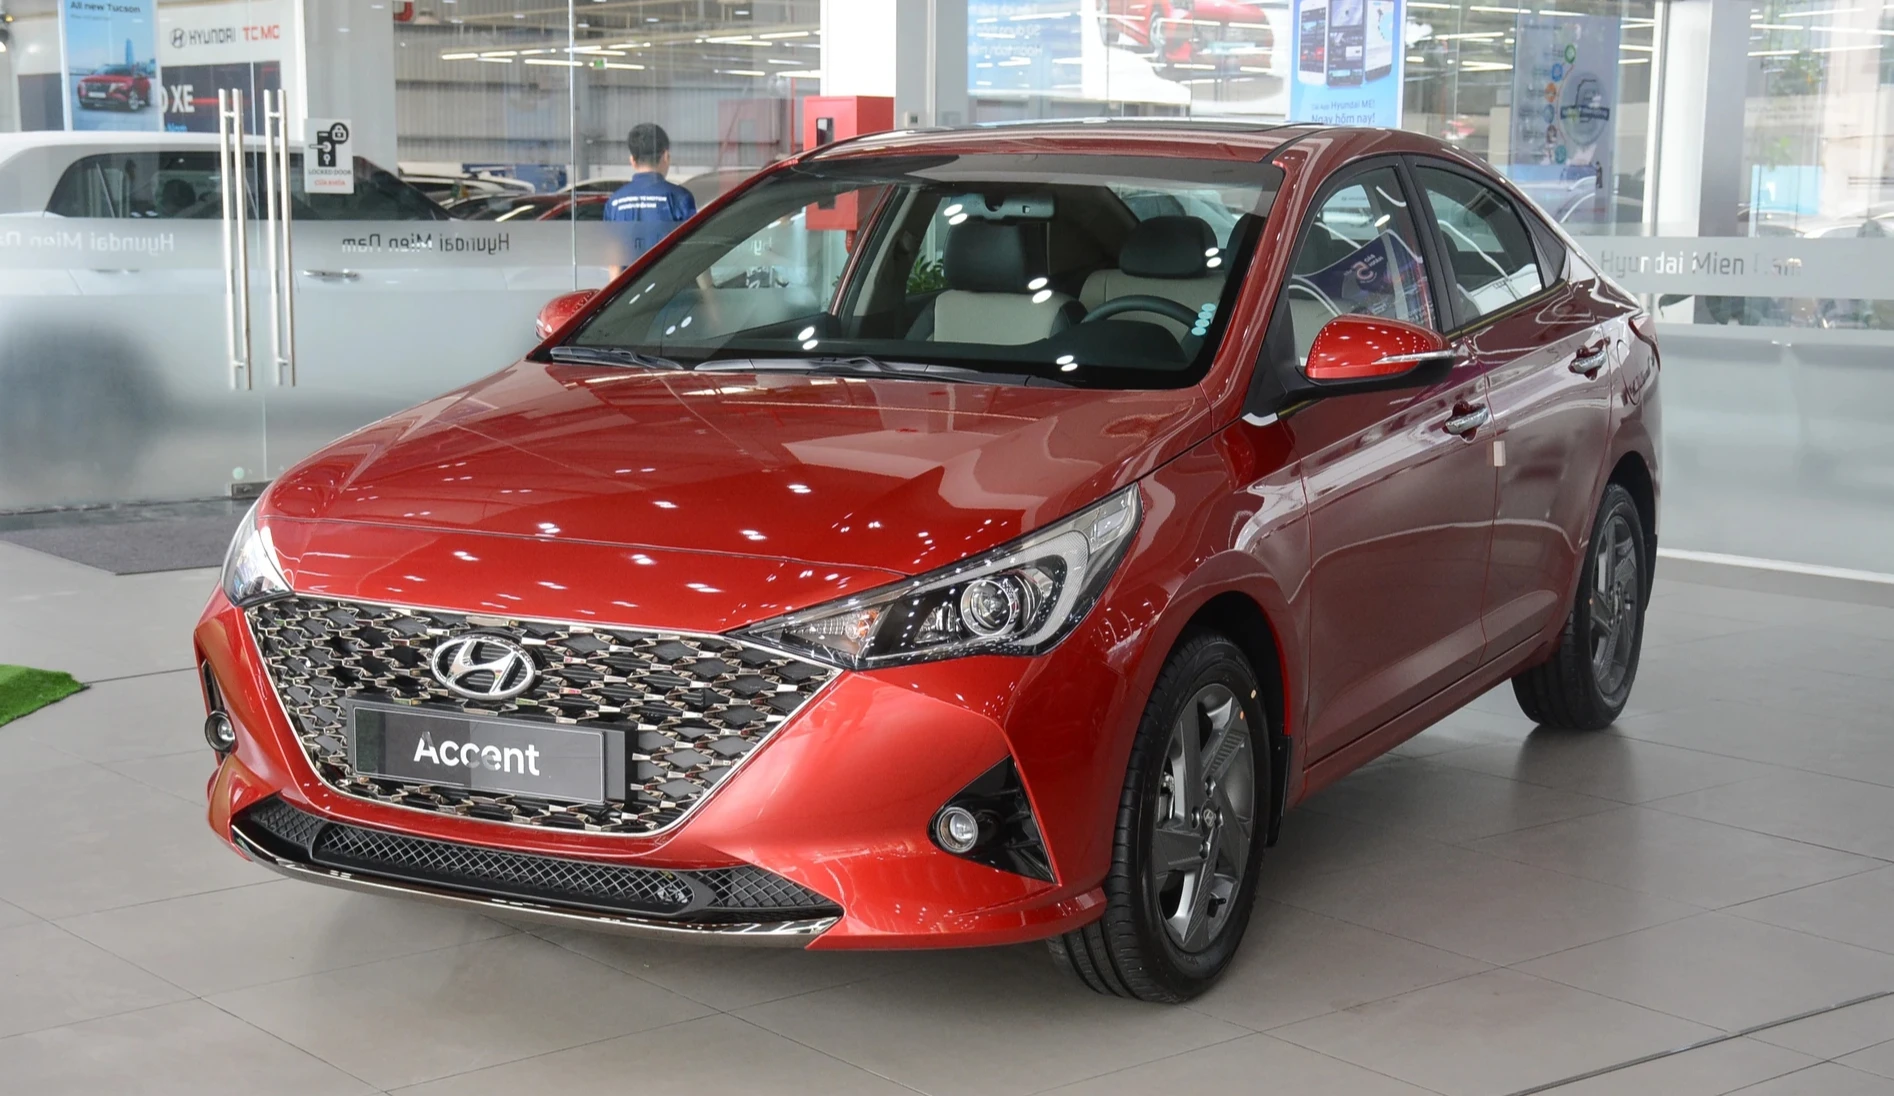 Đại lý giảm giá Hyundai Accent, xả hàng tồn kho nhường chỗ cho thế hệ mới